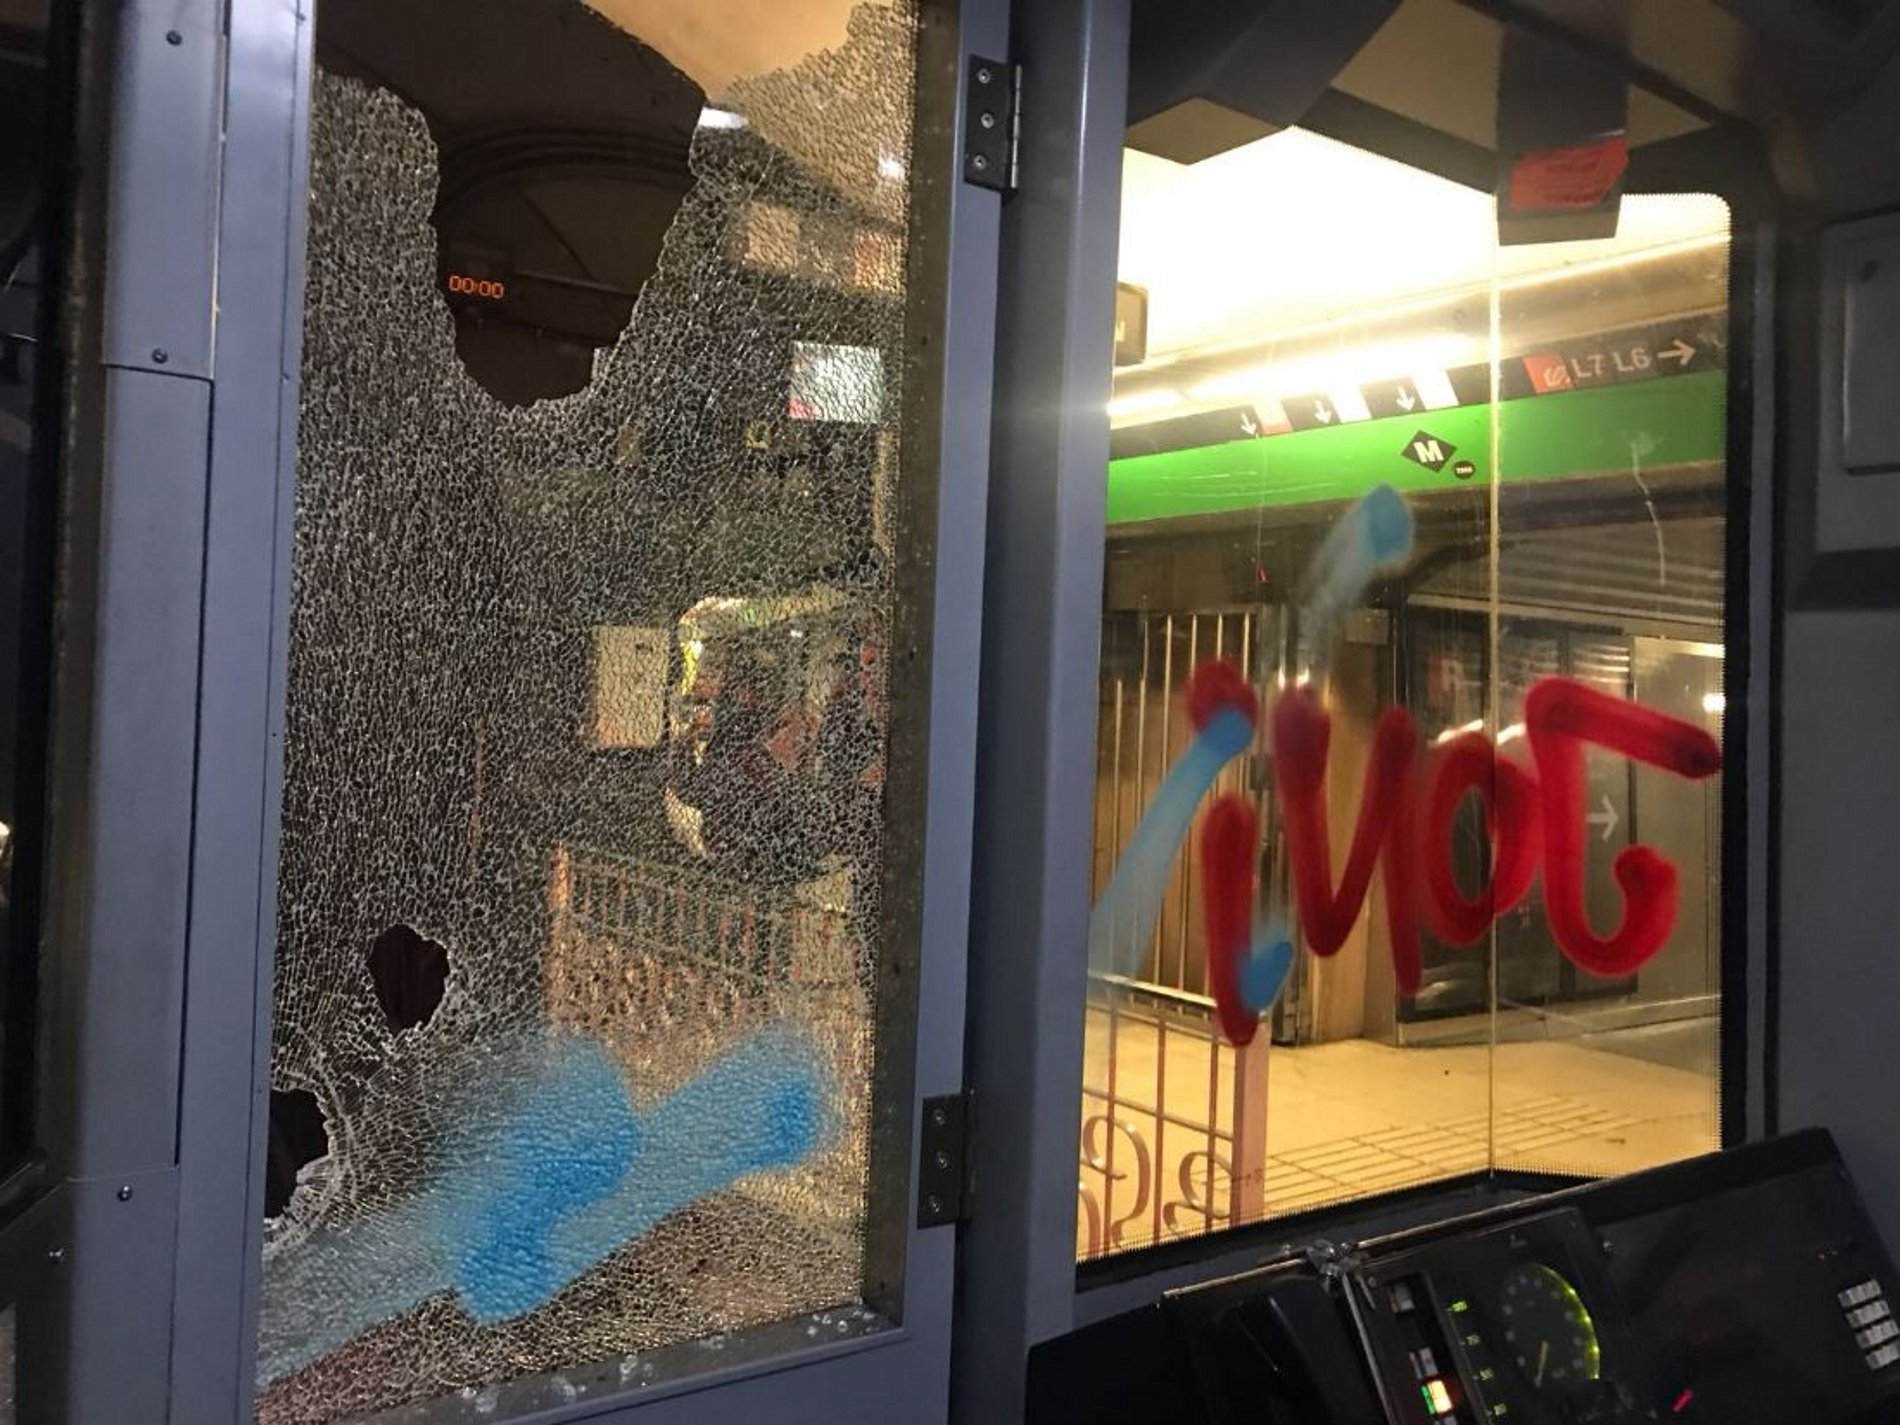 Trabajadores del metro denuncian que los grafiteros los amenazan con Taser